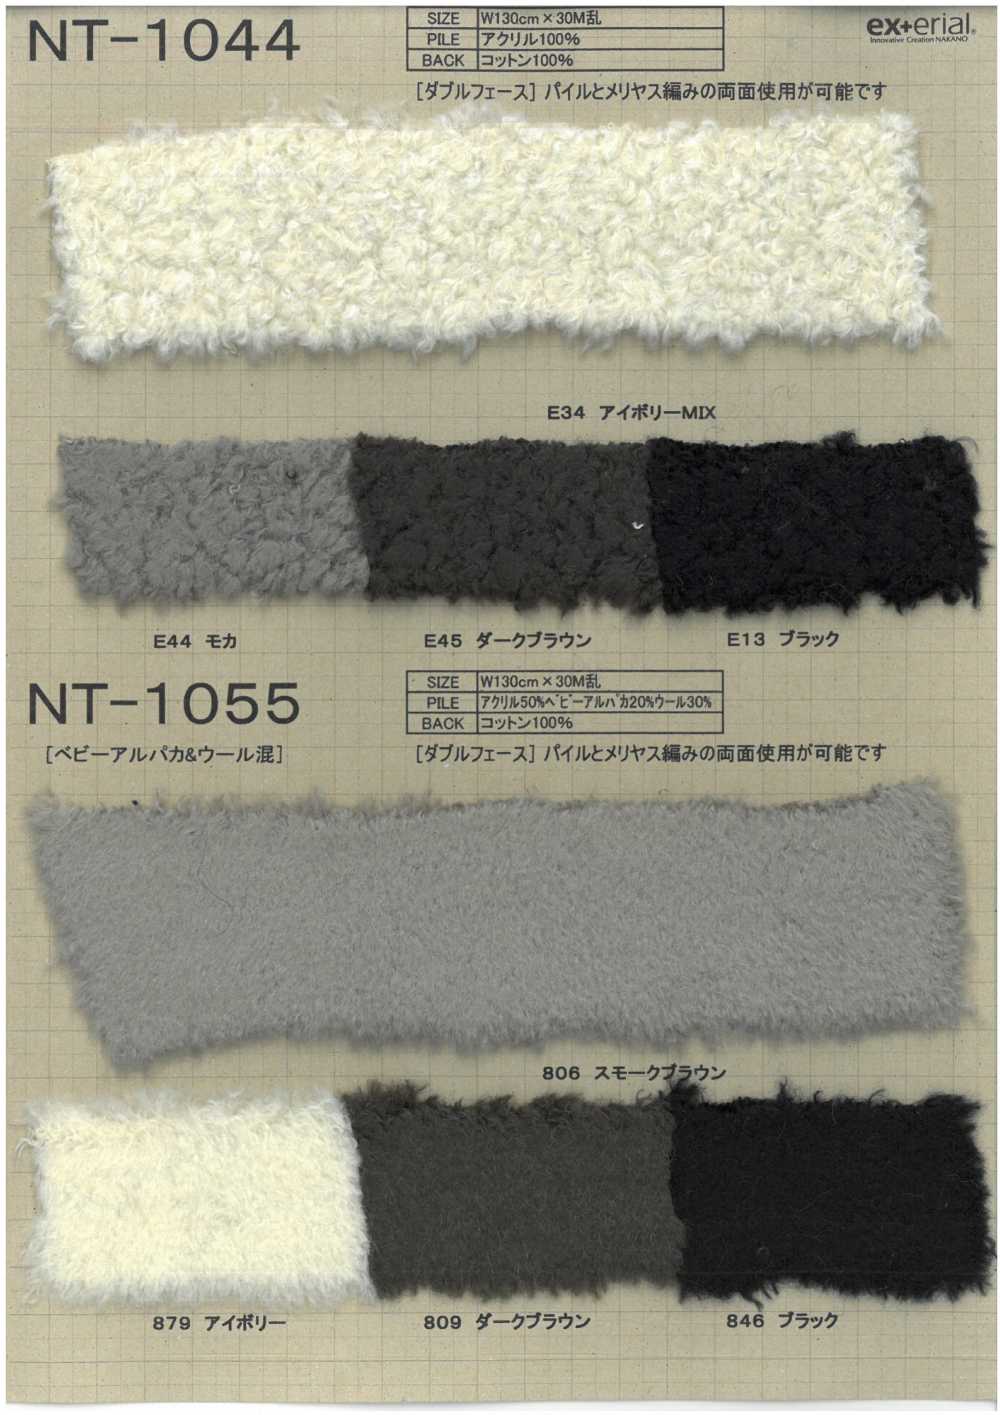 NT-1044 工艺毛皮【双面羊】[面料] 中野袜业